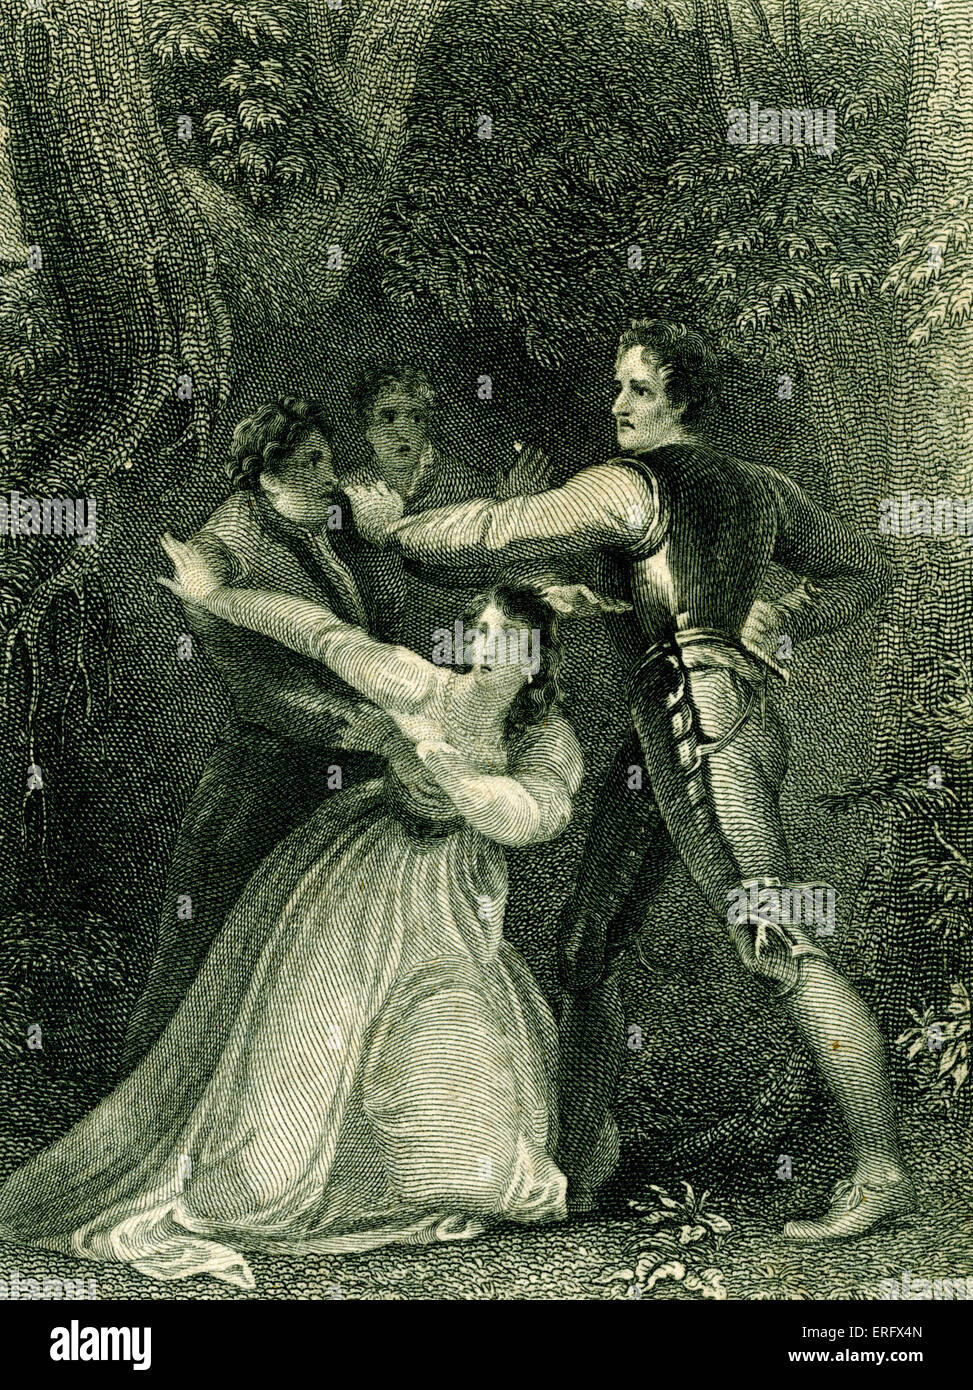 William Shakespeare - Two Gentlemen of Verona - Komödie.  In den Wäldern. Gemälde von Stothard, Kupferstich von Rogers. Stockfoto